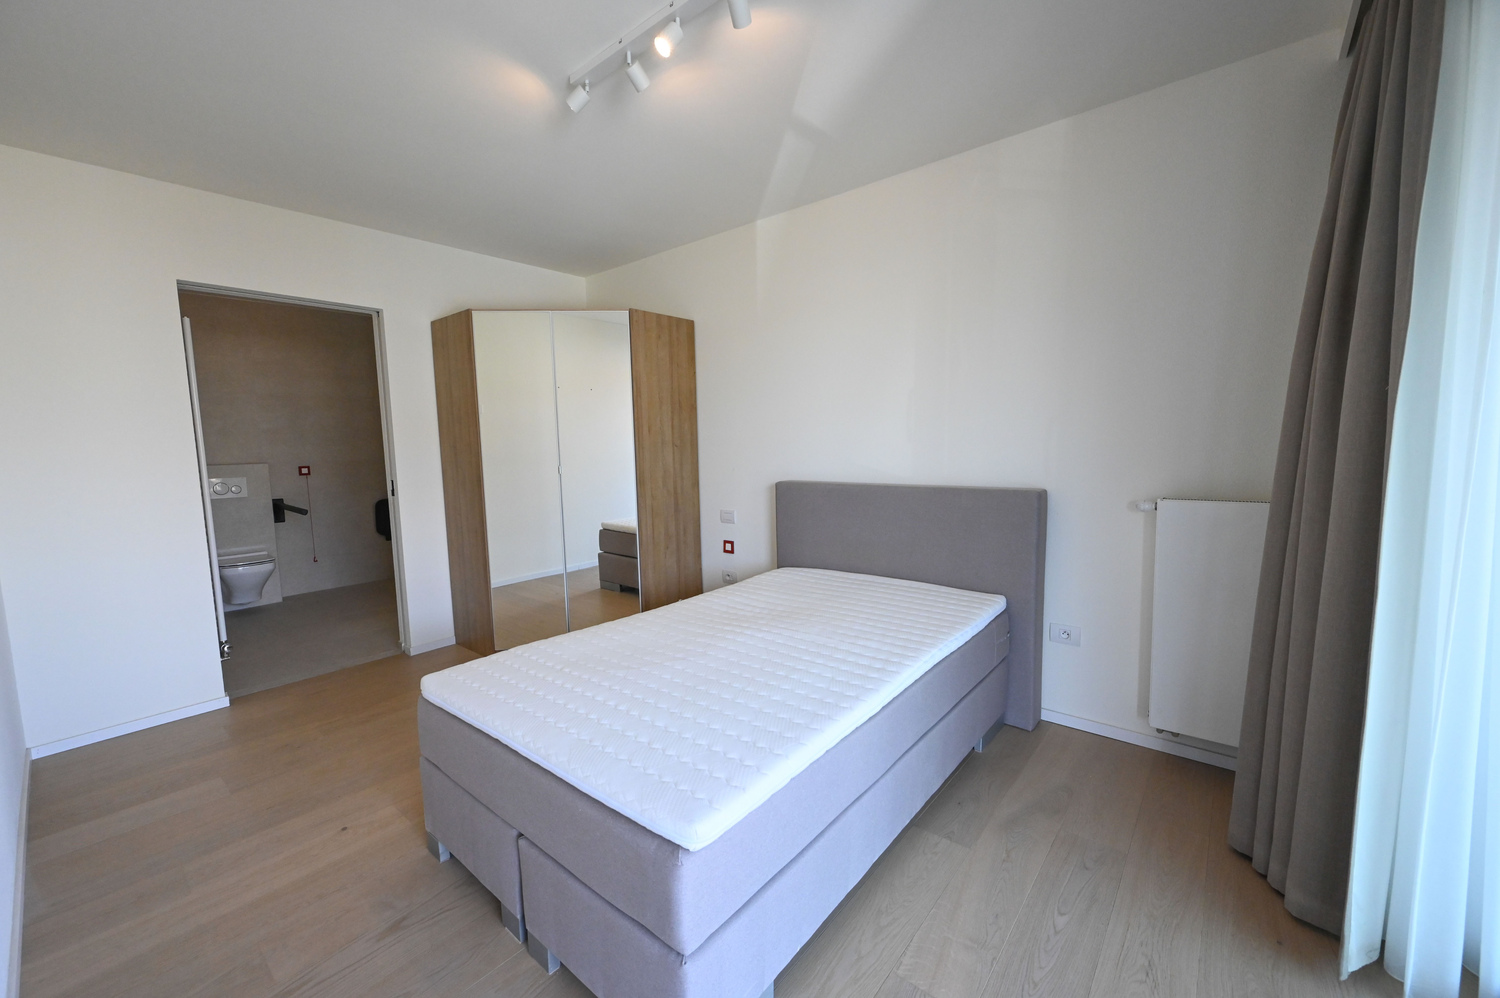 ONGEMEUBELD: SERVICEFLAT: Lichtrijk 1-slaapkamer appartement nabij de Konings &amp; Lippenslaan in de Residentie Cypres. 